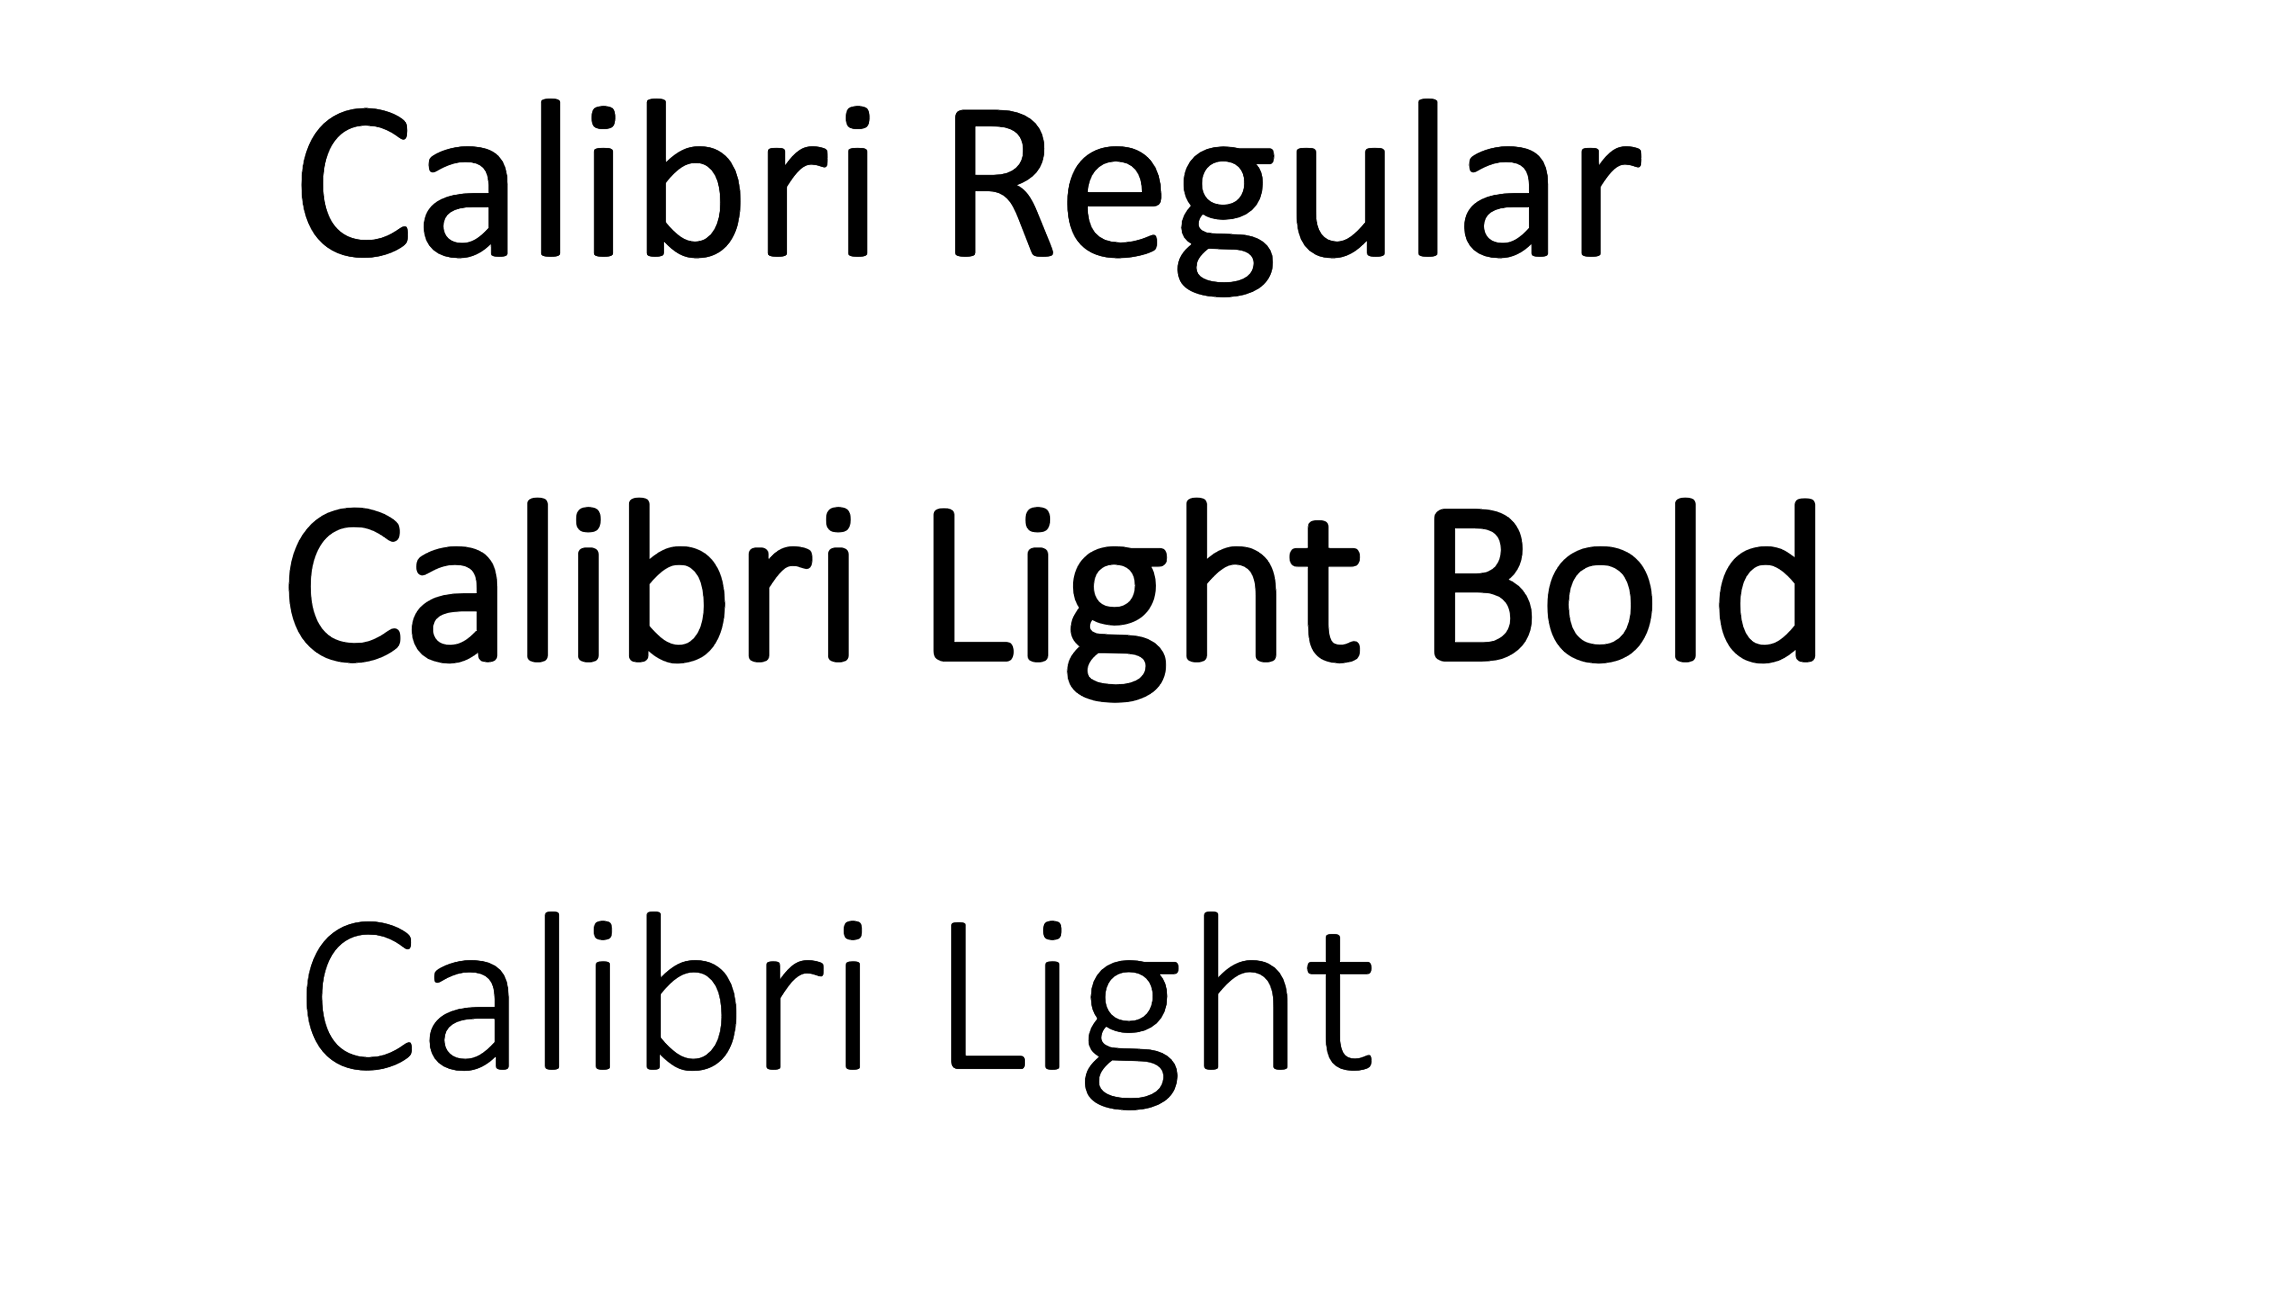 calibri-regular-calibri-light-bold-calibri-light-macos-chrome